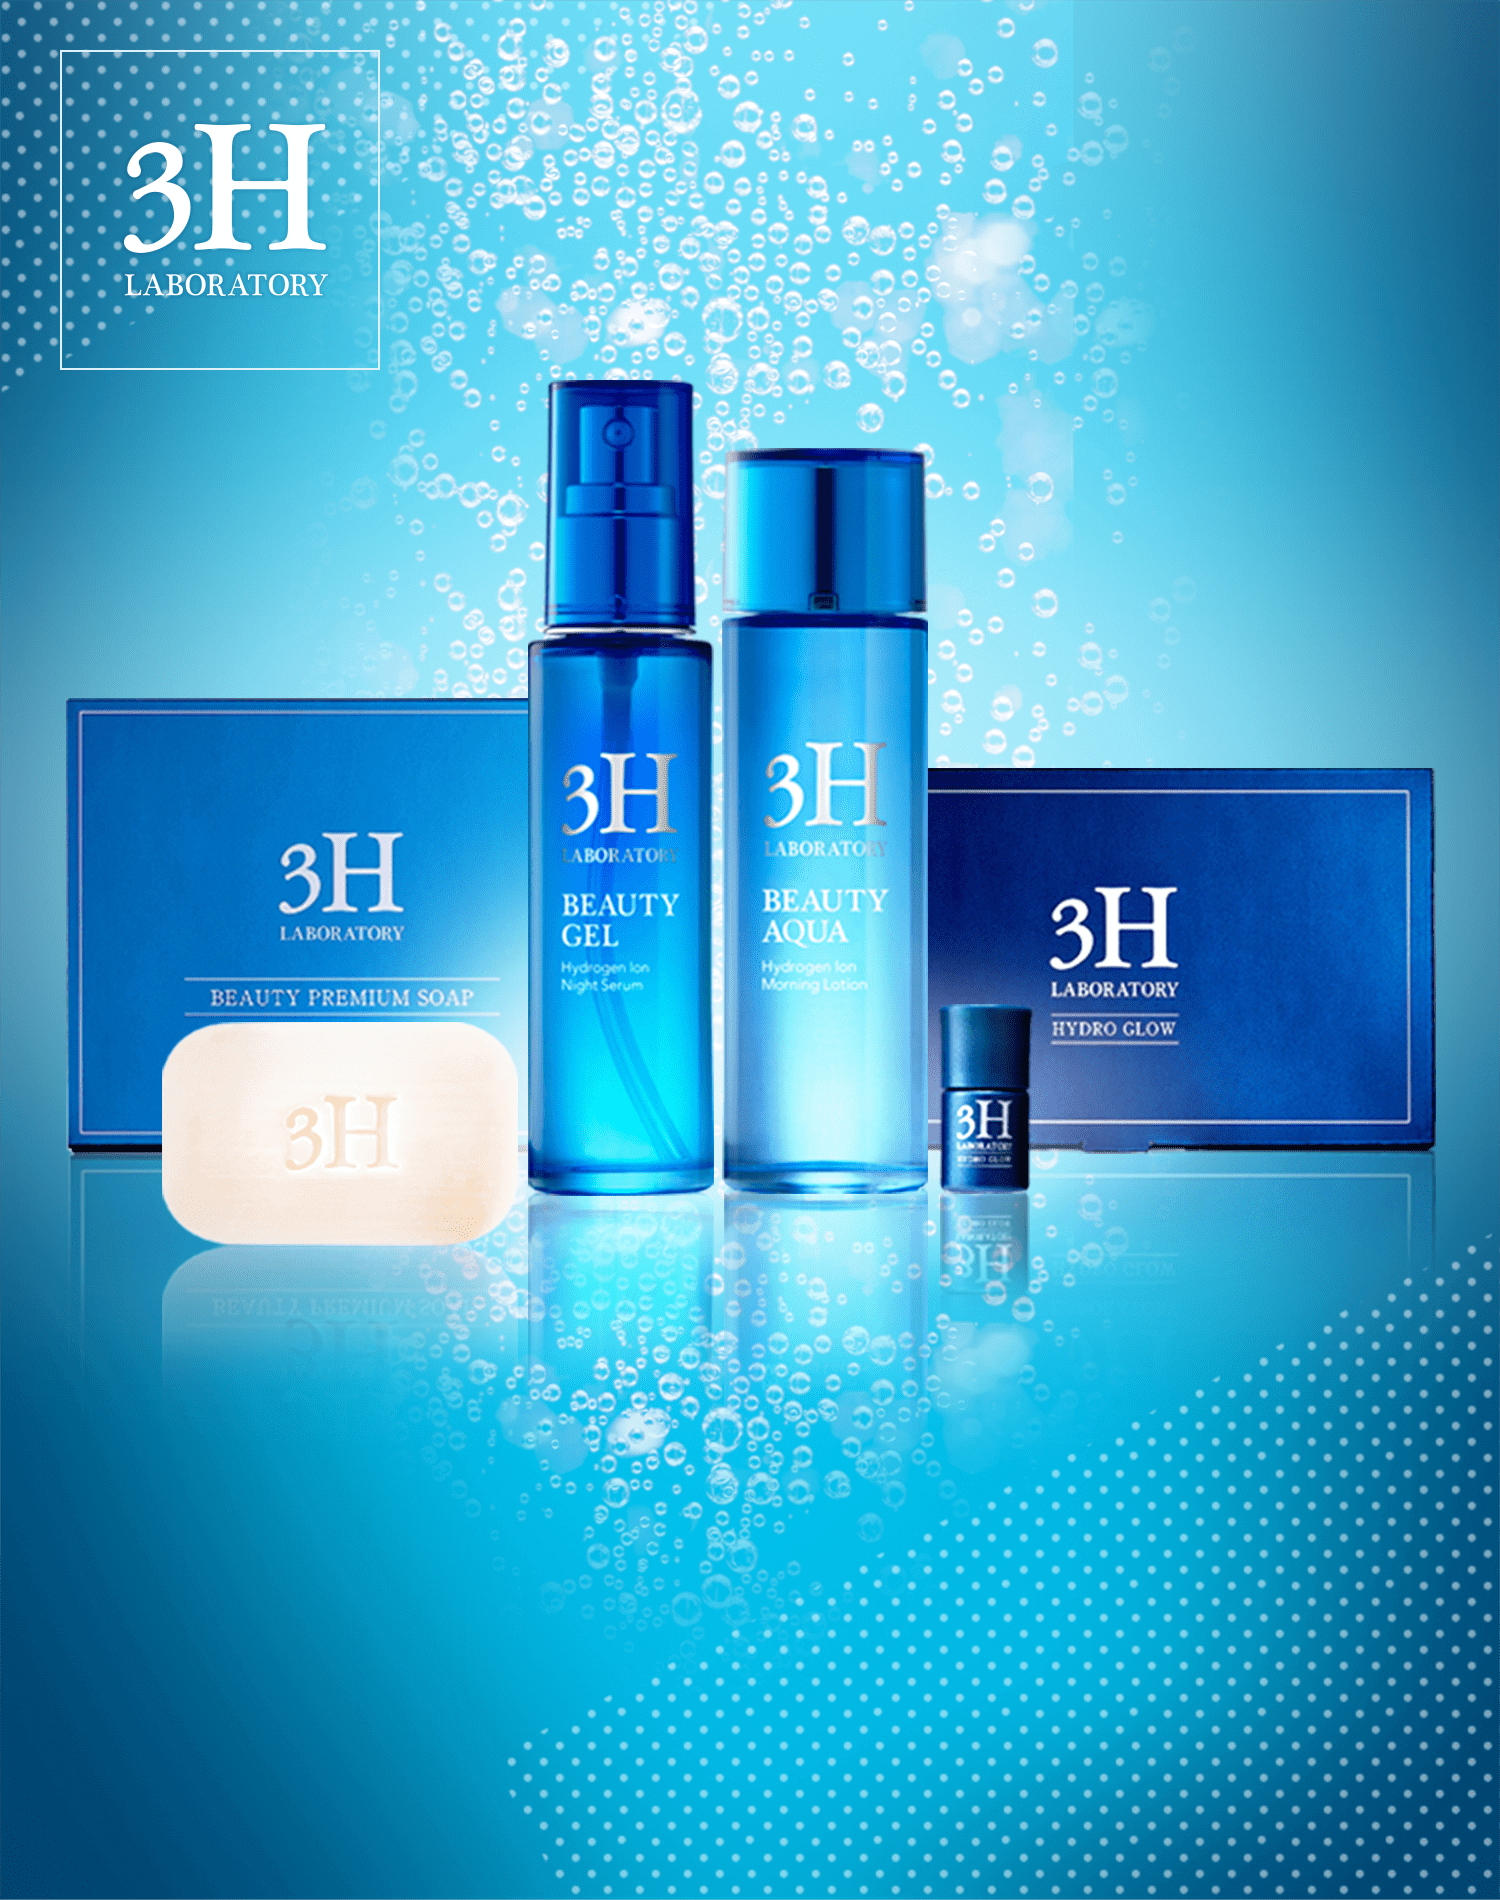 3Hは「水素のチカラ」を最大限生かした新発想の美科学基礎化粧シリーズ